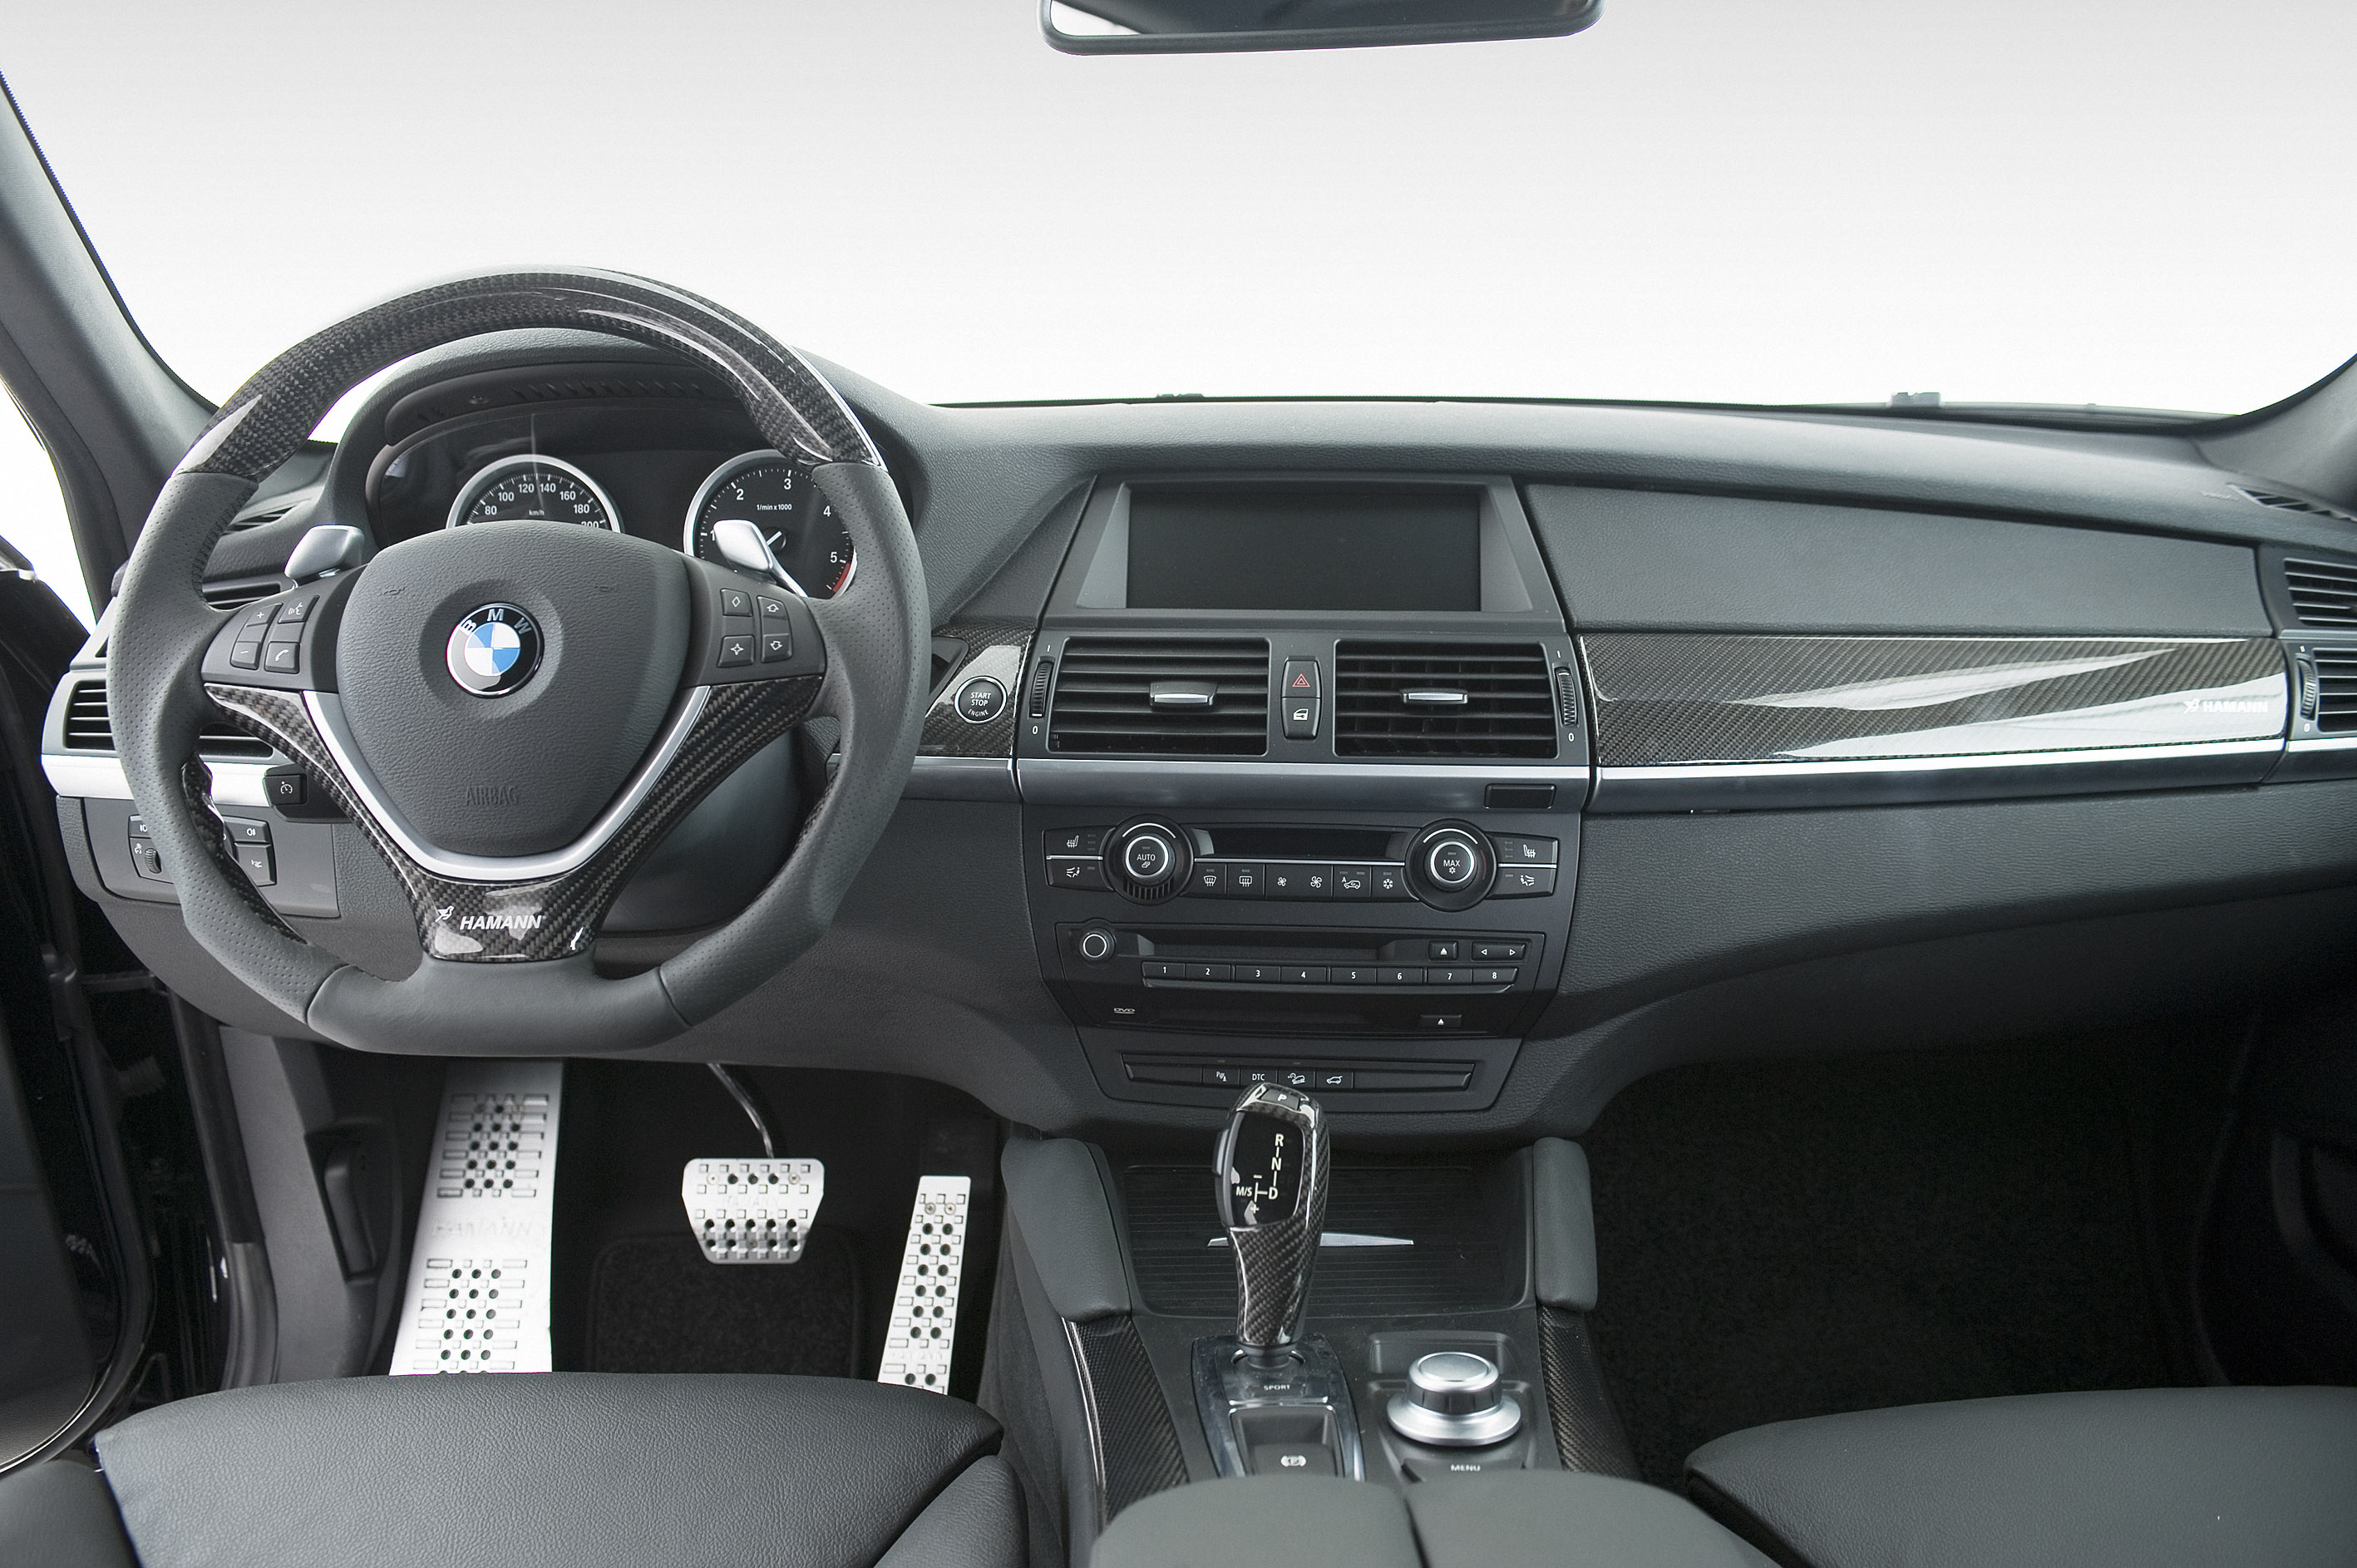 Ремонт x6. BMW x6 2009 салон. BMW x6 e71 салон. BMW x6 2009 комплектации. БМВ х6 2012 салон.